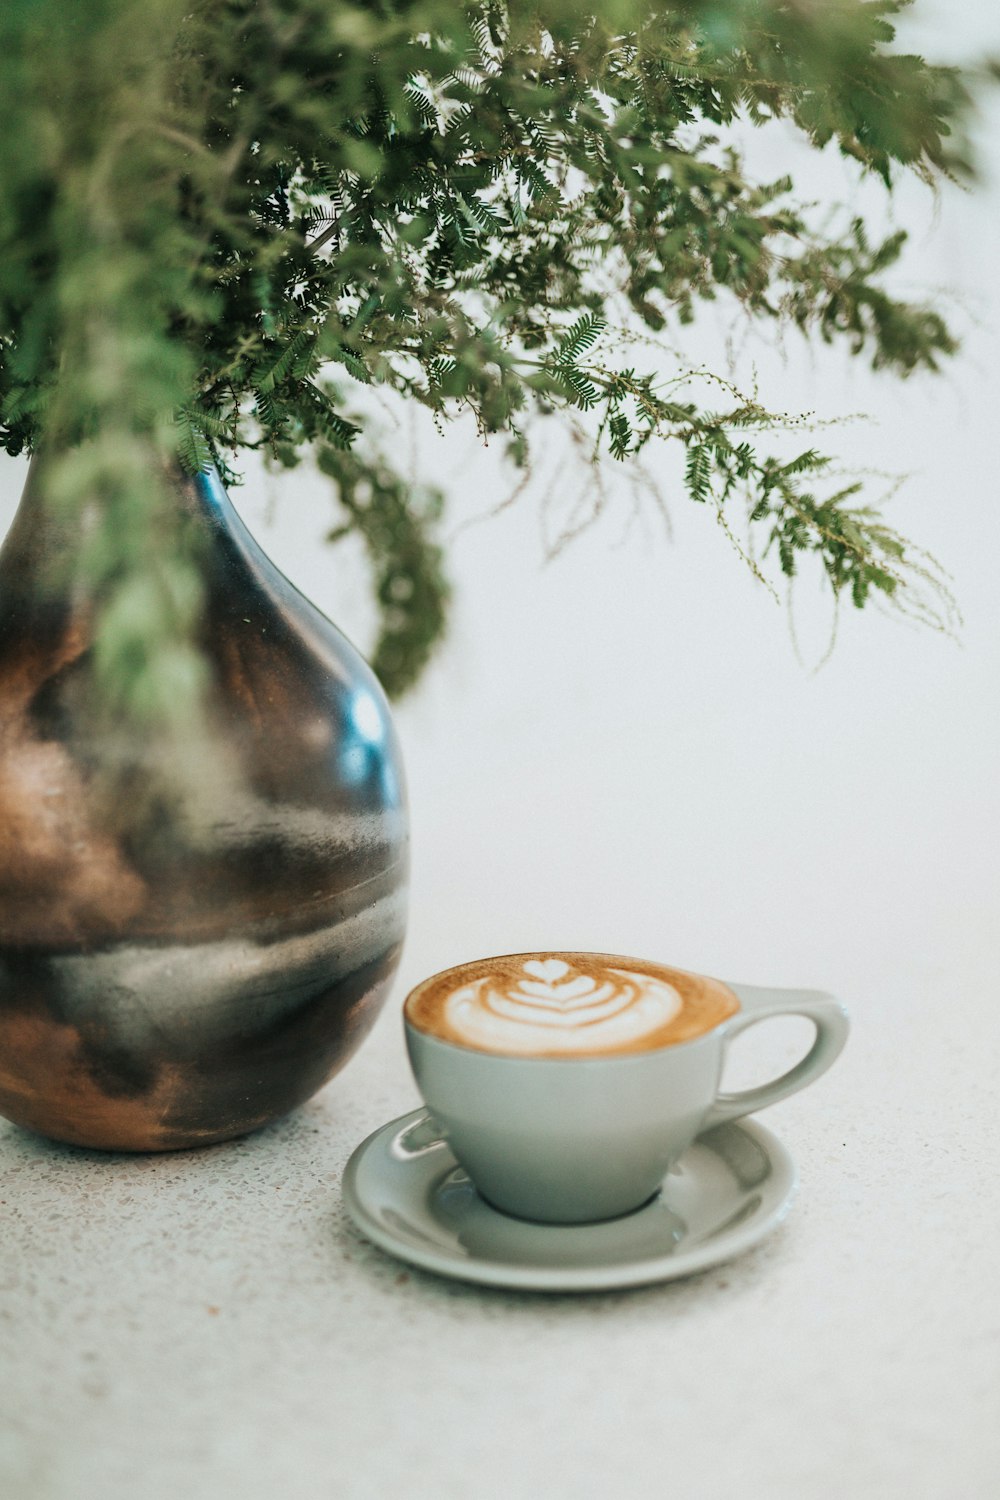 xícara de café com leite perto de plantas no vaso